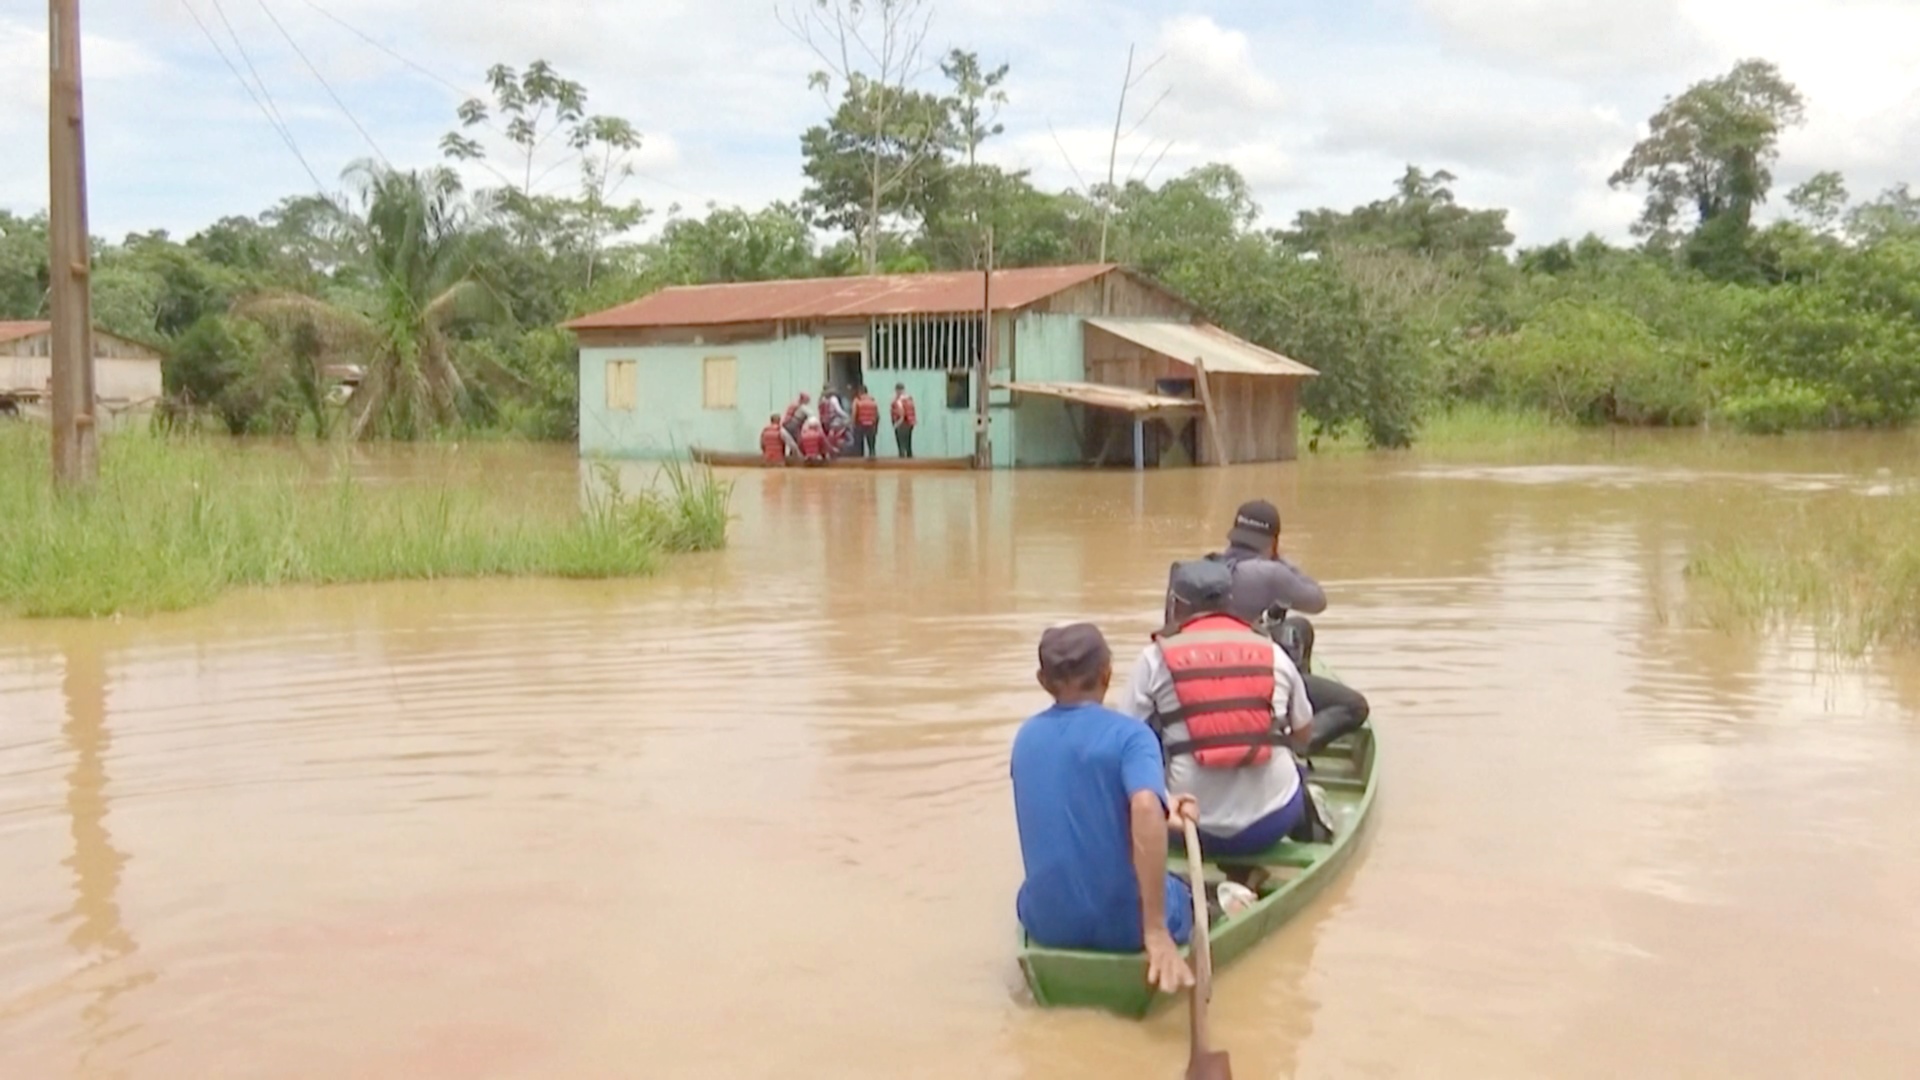 Наводнения в Боливии: военные добираются до пострадавших на каноэ